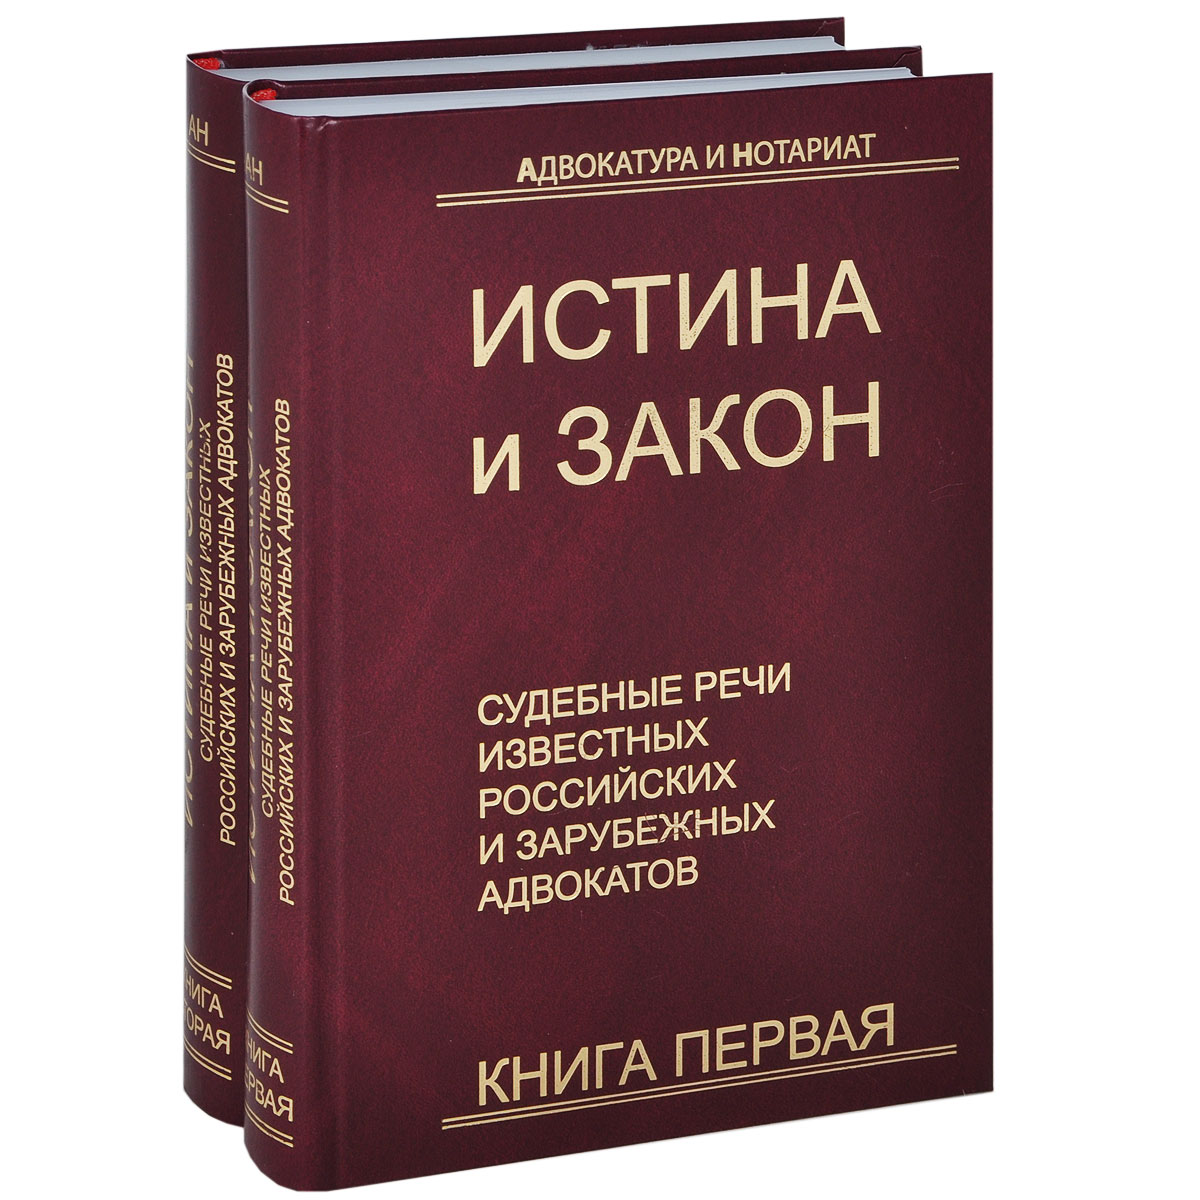 Истина и закон. Судебные речи известных российских и зарубежных адвокатов (комплект из 2 книг)